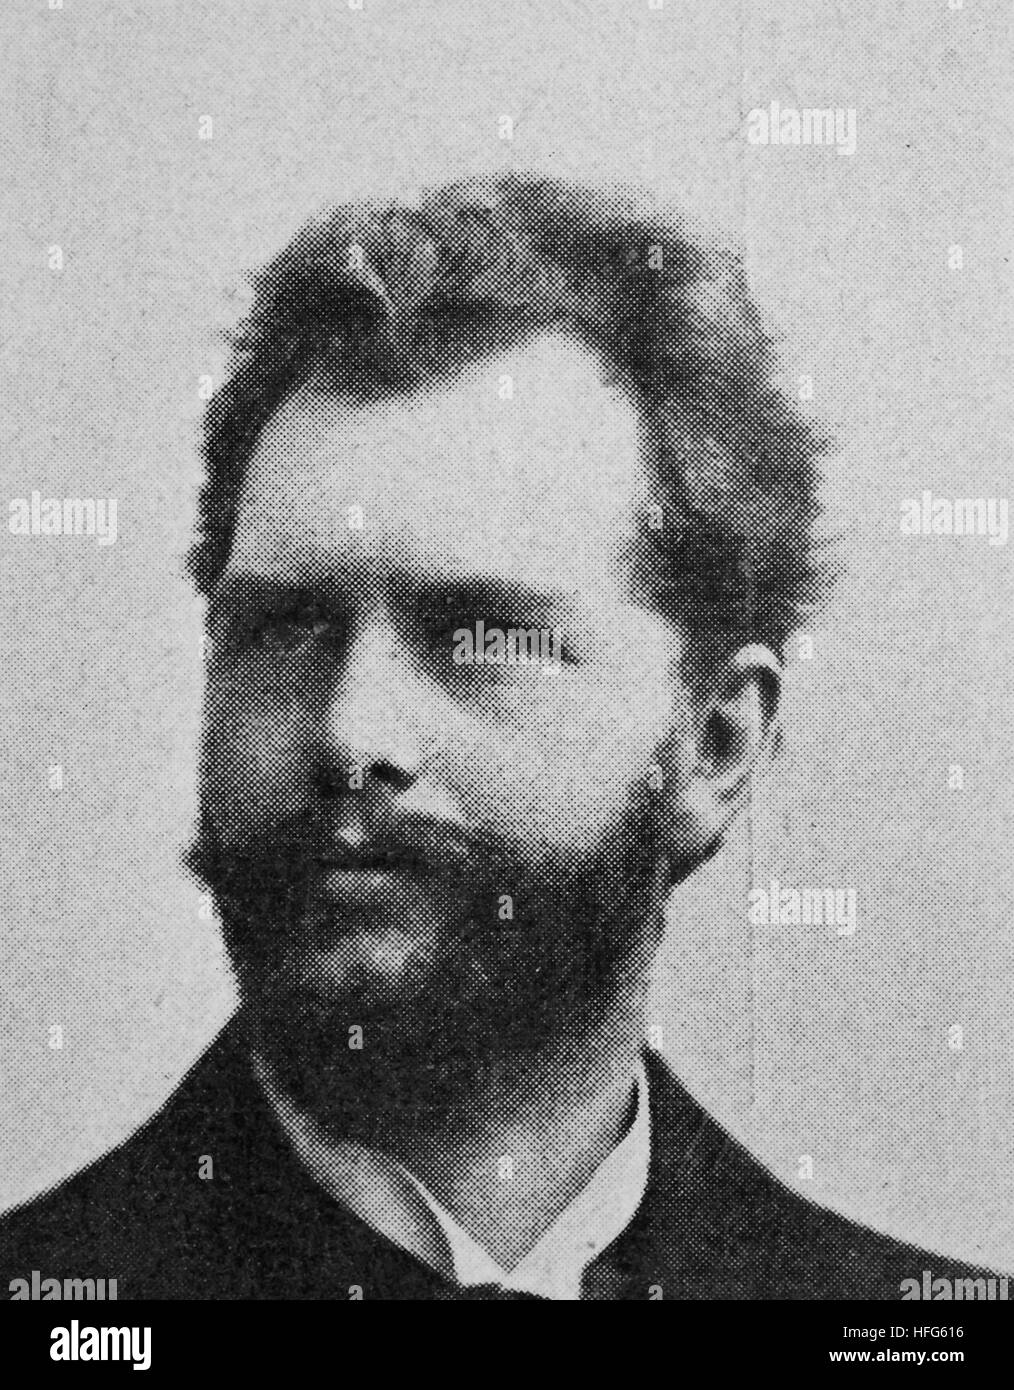 Wilhelm Reinhard Berger, war 1861-1911, ein deutscher Komponist, Pianist und Dirigent., Reproduktion Foto aus dem Jahr 1895, digital verbessert Stockfoto